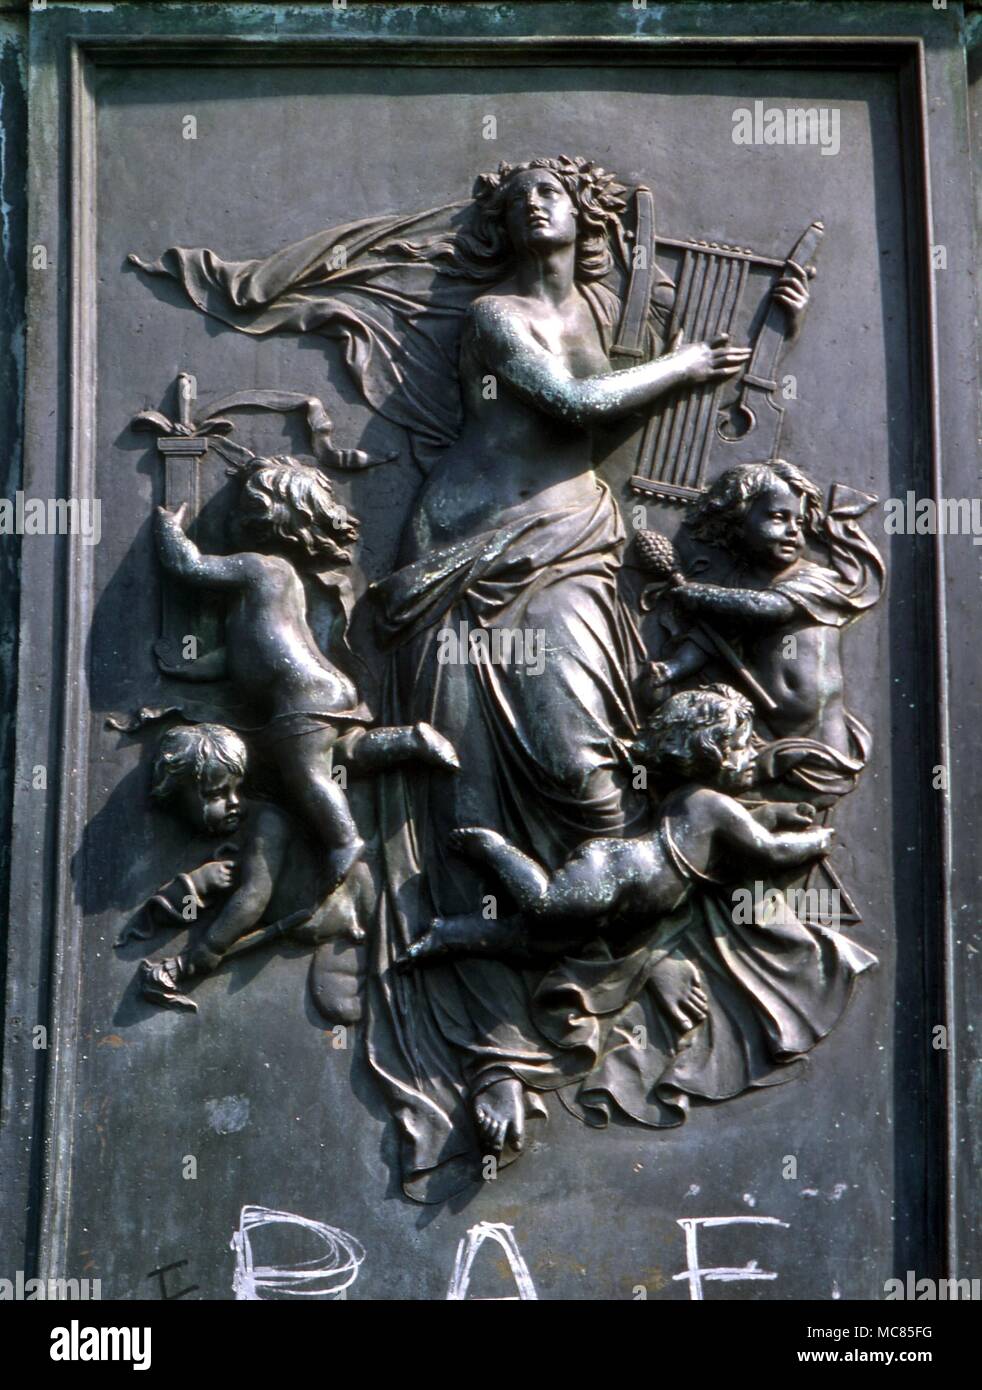 Personificazione della musica, con l'arpa e amorini. Figura scolpita sul basamento della statua di Ludwig Beethoven, nel centro di Bonn, Germania. Foto Stock